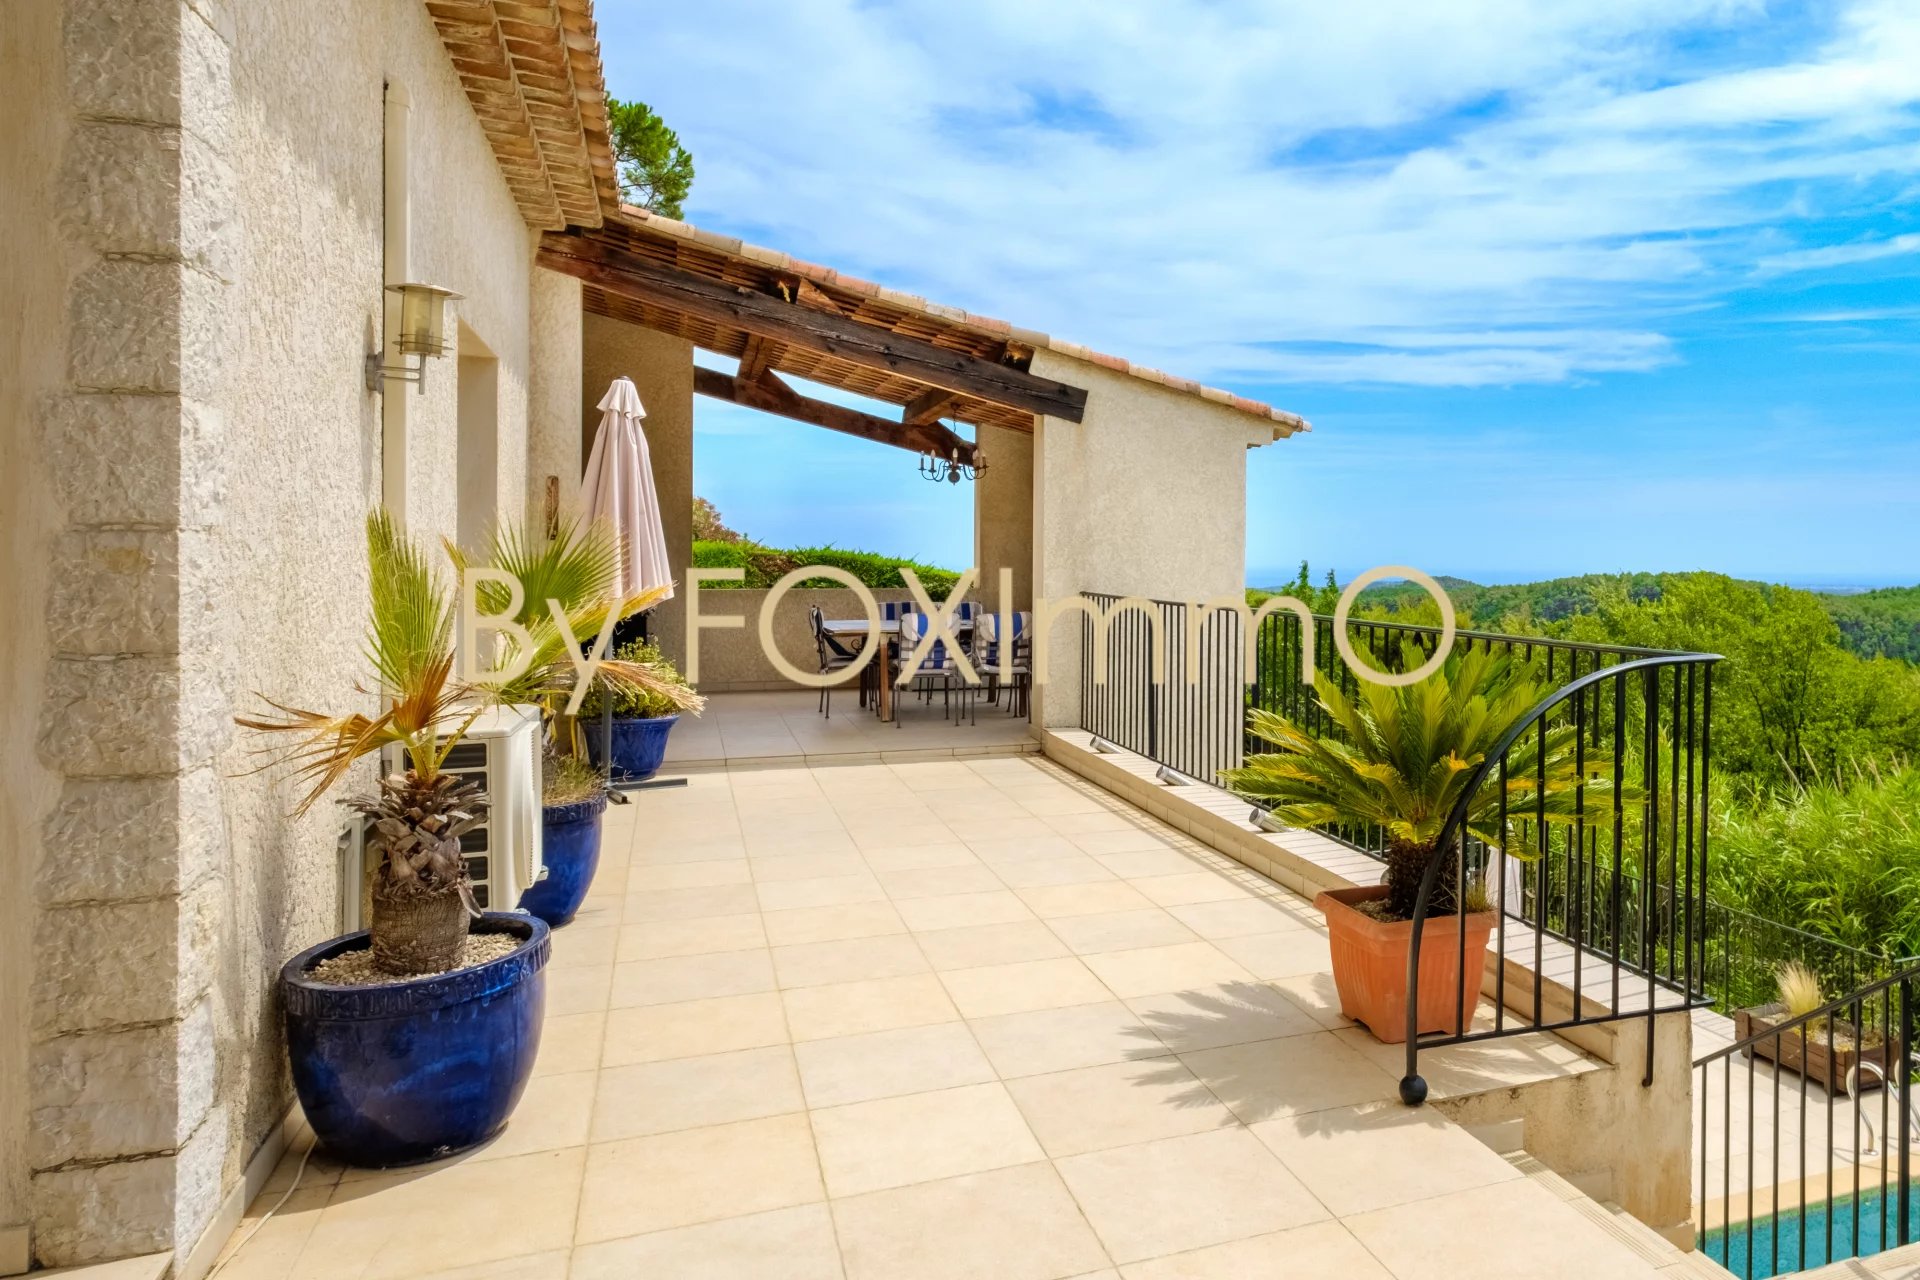 In vendita in Costa Azzurra, Tourrettes, villa recente, vista panoramica sul mare e sulle montagne, tranquilla, dominante, piscina, garage, ampio giardino